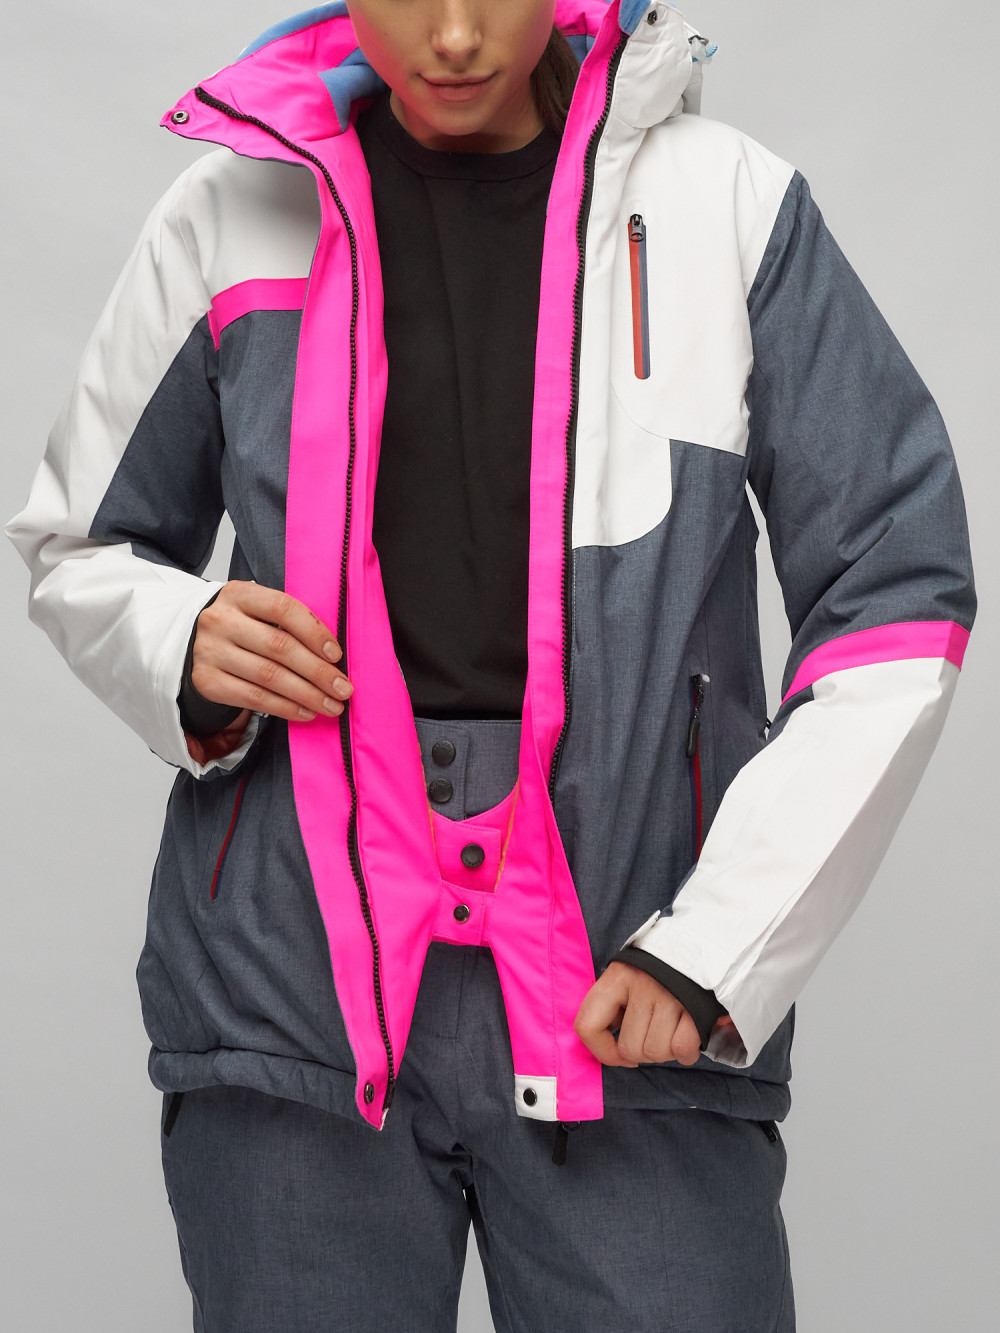 Купить горнолыжный костюм женский оптом от производителя недорого в Москве 02282Bl 1